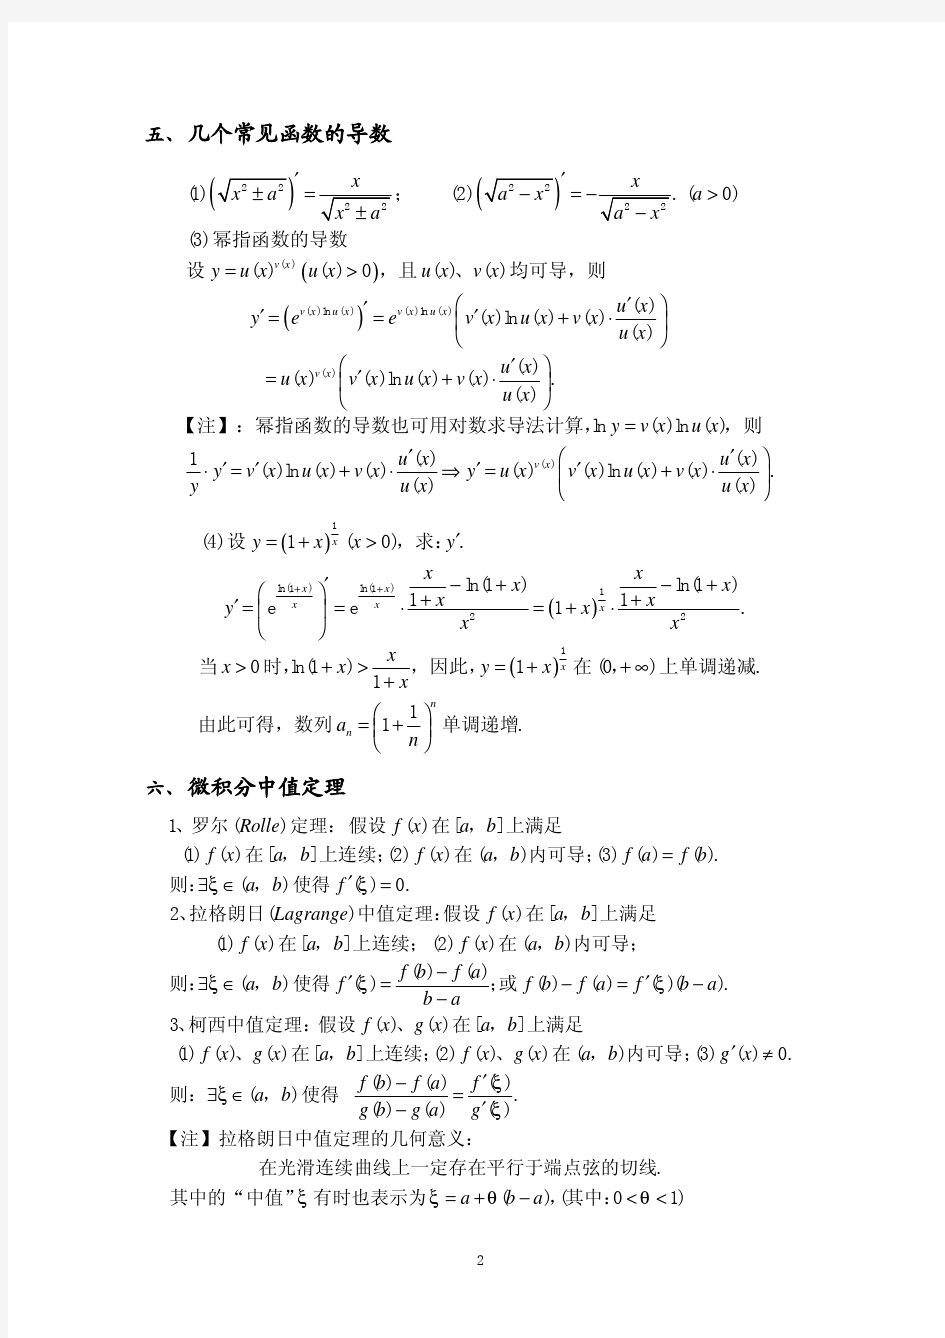 微积分 中常见的基本公式 